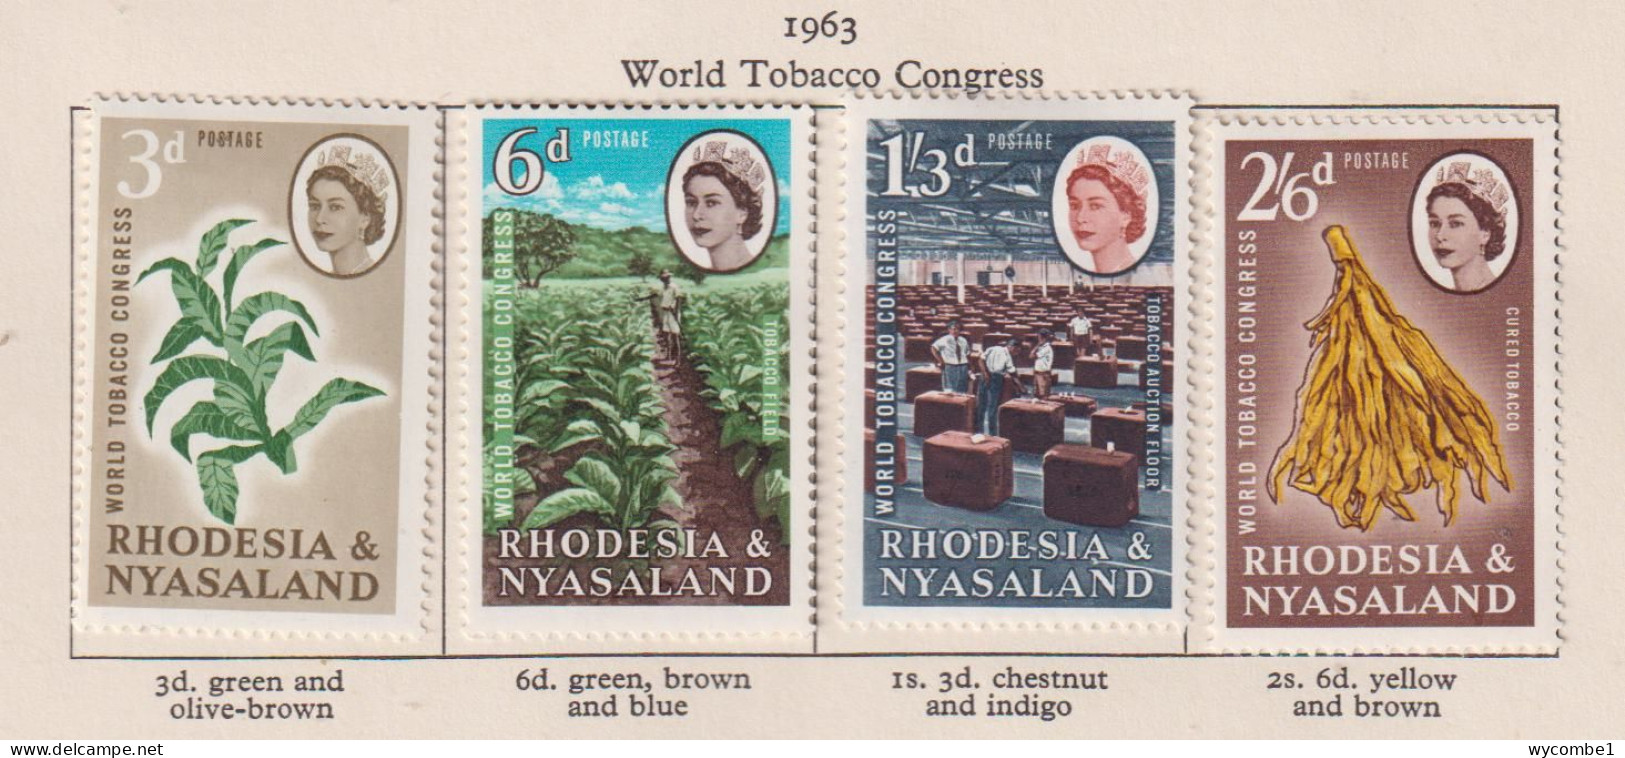 RHODESIA  AND NYASALAND - 1963 Tobacco Congress Set Hinged Mint (2s6d Gum Adhesion) - Rodesia & Nyasaland (1954-1963)